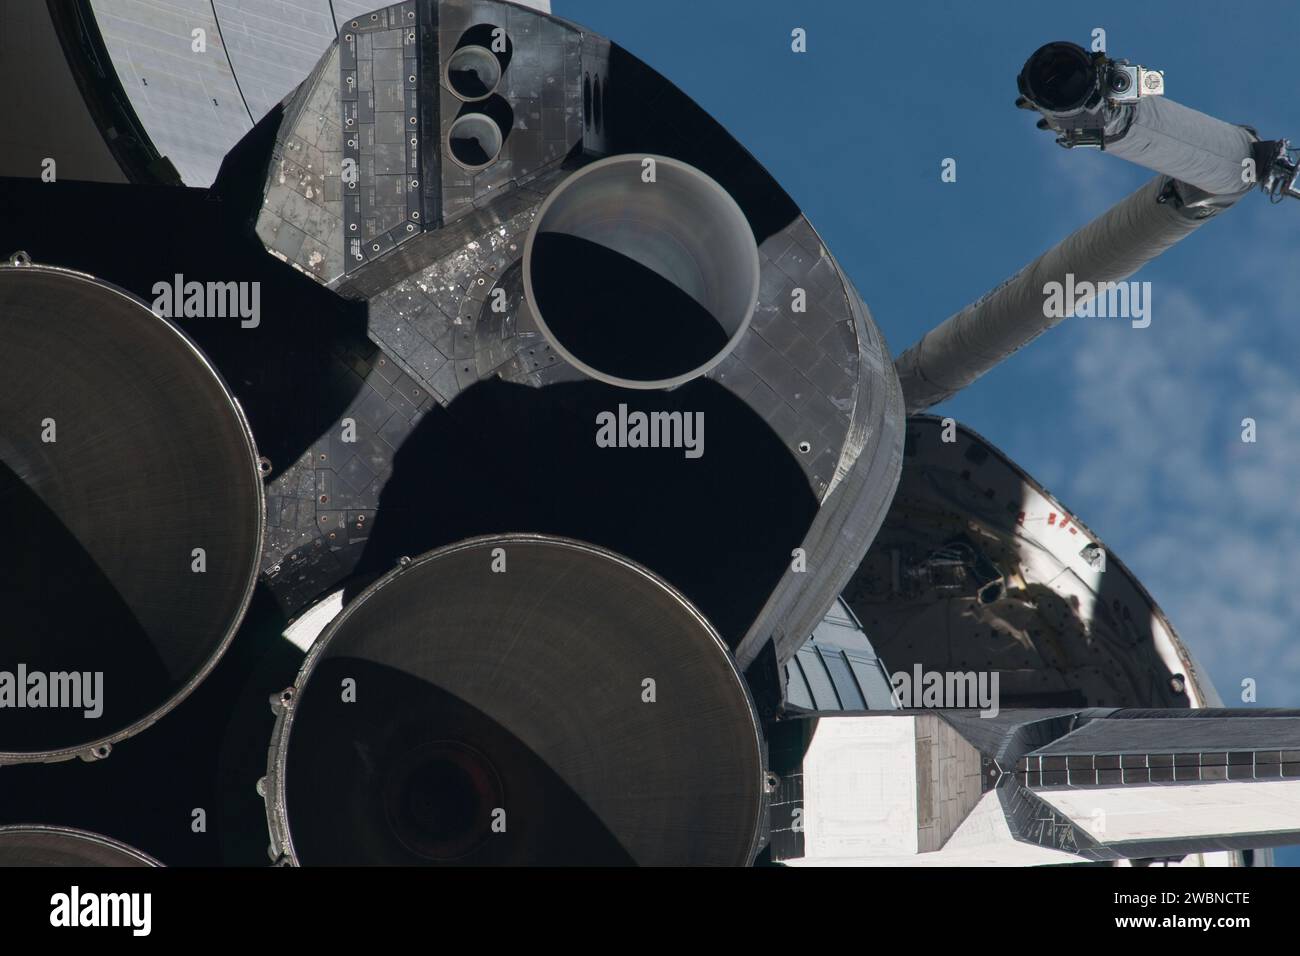 ISS028-E-015647 (10. Juli 2011) --- dieses Bild von Atlantis' Haupt- und Subsystemtriebwerken ist eines von einer Bildserie, die verschiedene Teile des Raumschiffs Atlantis in der Erdumlaufbahn zeigt wie von einem der drei Besatzungsmitglieder -- die Hälfte der Stationscrew -- die zu diesem Zweck auf der Internationalen Raumstation mit Standbildkameras ausgerüstet waren, als das Shuttle für Fotos und visuelle Vermessungen „posierte“ und einen Back-Flip für das Rendezvous-Pitch-Manöver (RPM) durchführte. Ein 1000-mm-Objektiv wurde verwendet, um diese bestimmte Serie von Bildern aufzunehmen. Stockfoto